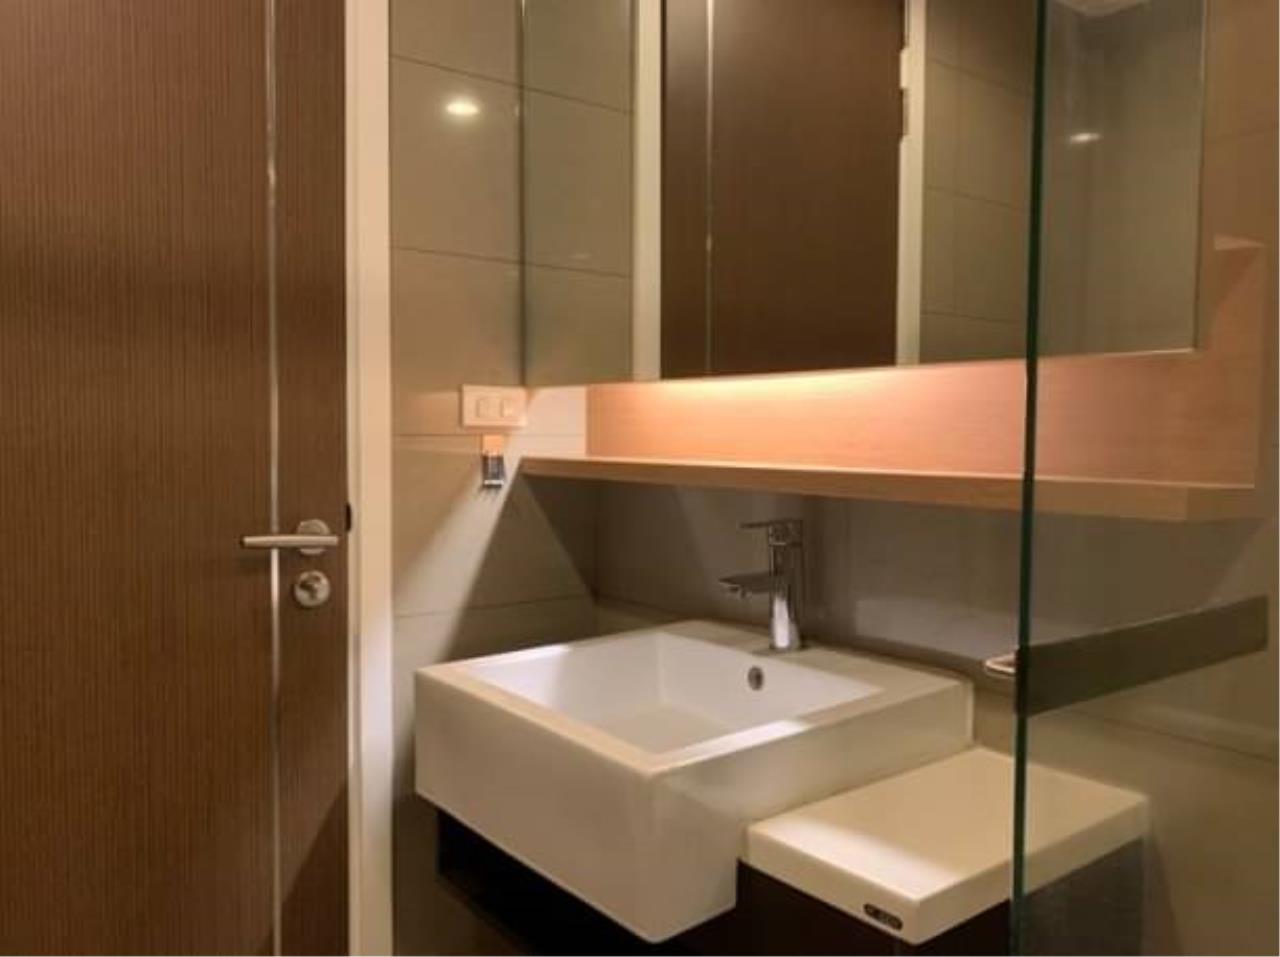 1 bedroom 1 bathroom 15 sukhumvit residence for rent for sale